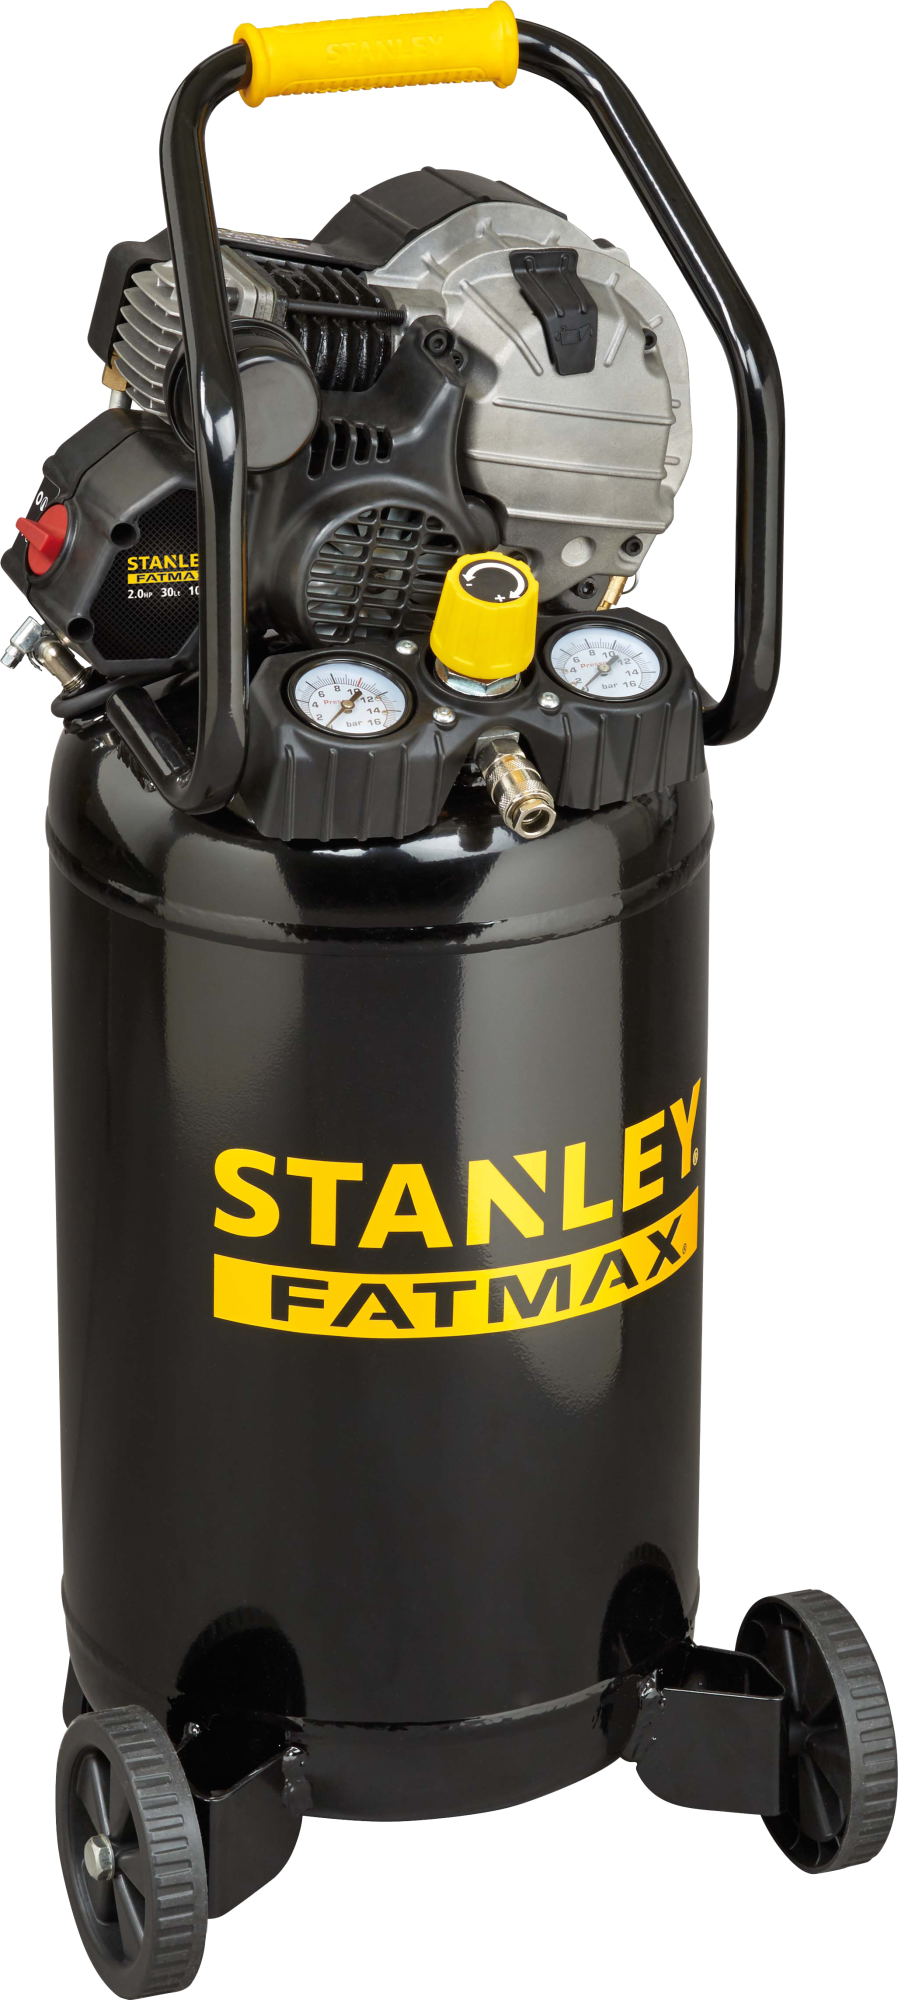 Compresor stanley fatmax hy227/10/30v de 2 cv y 30l de depósito